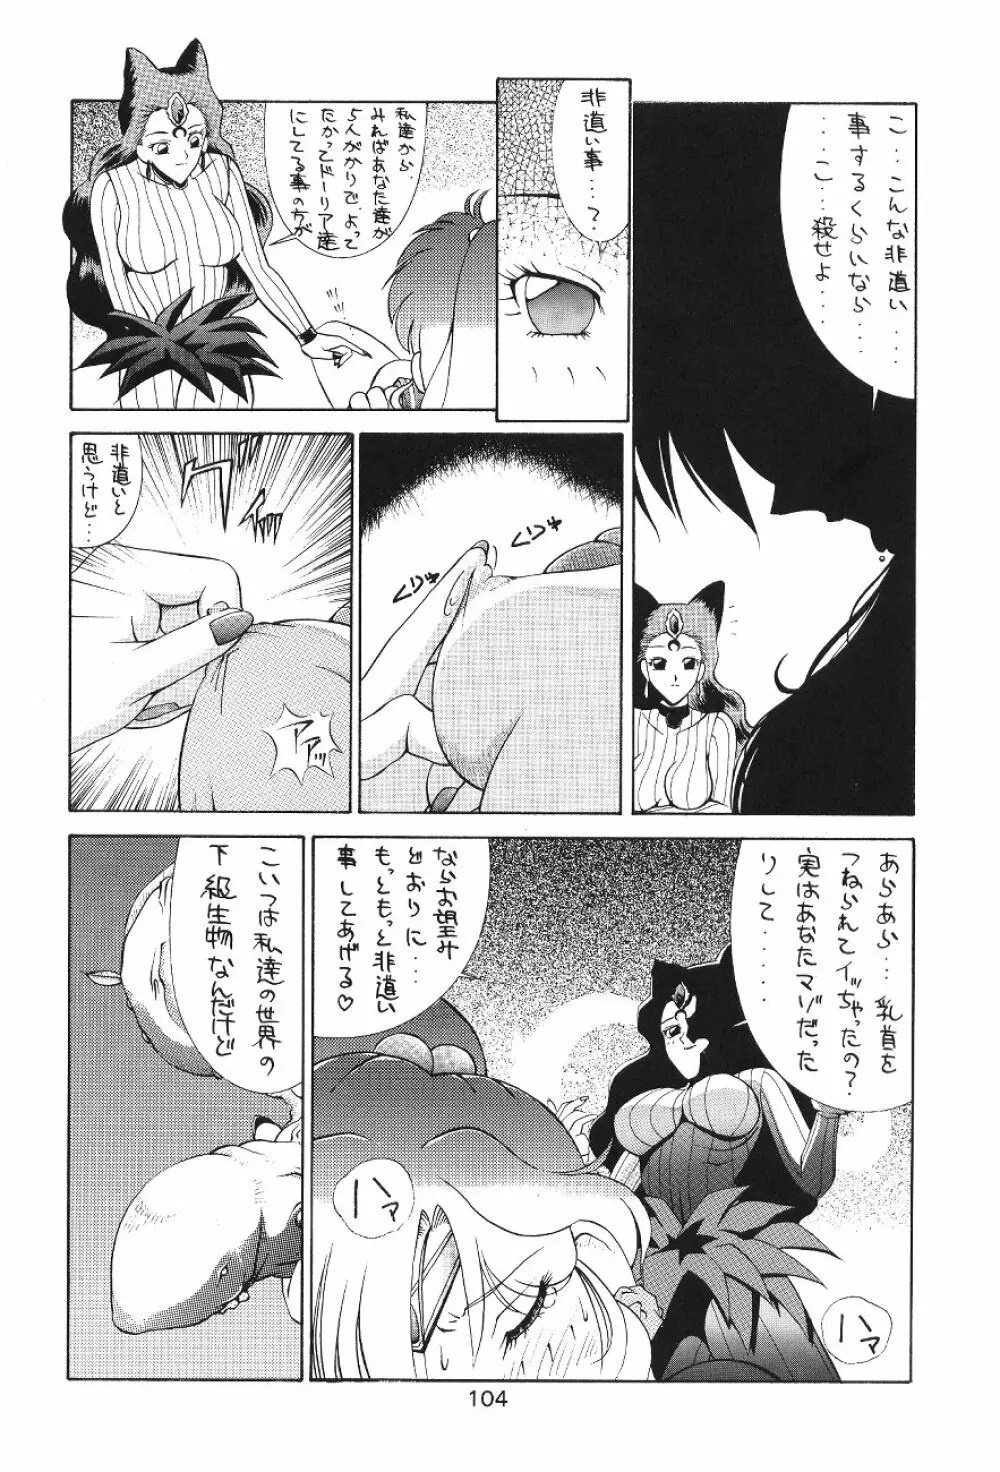 KATZE 7 上巻 - page105